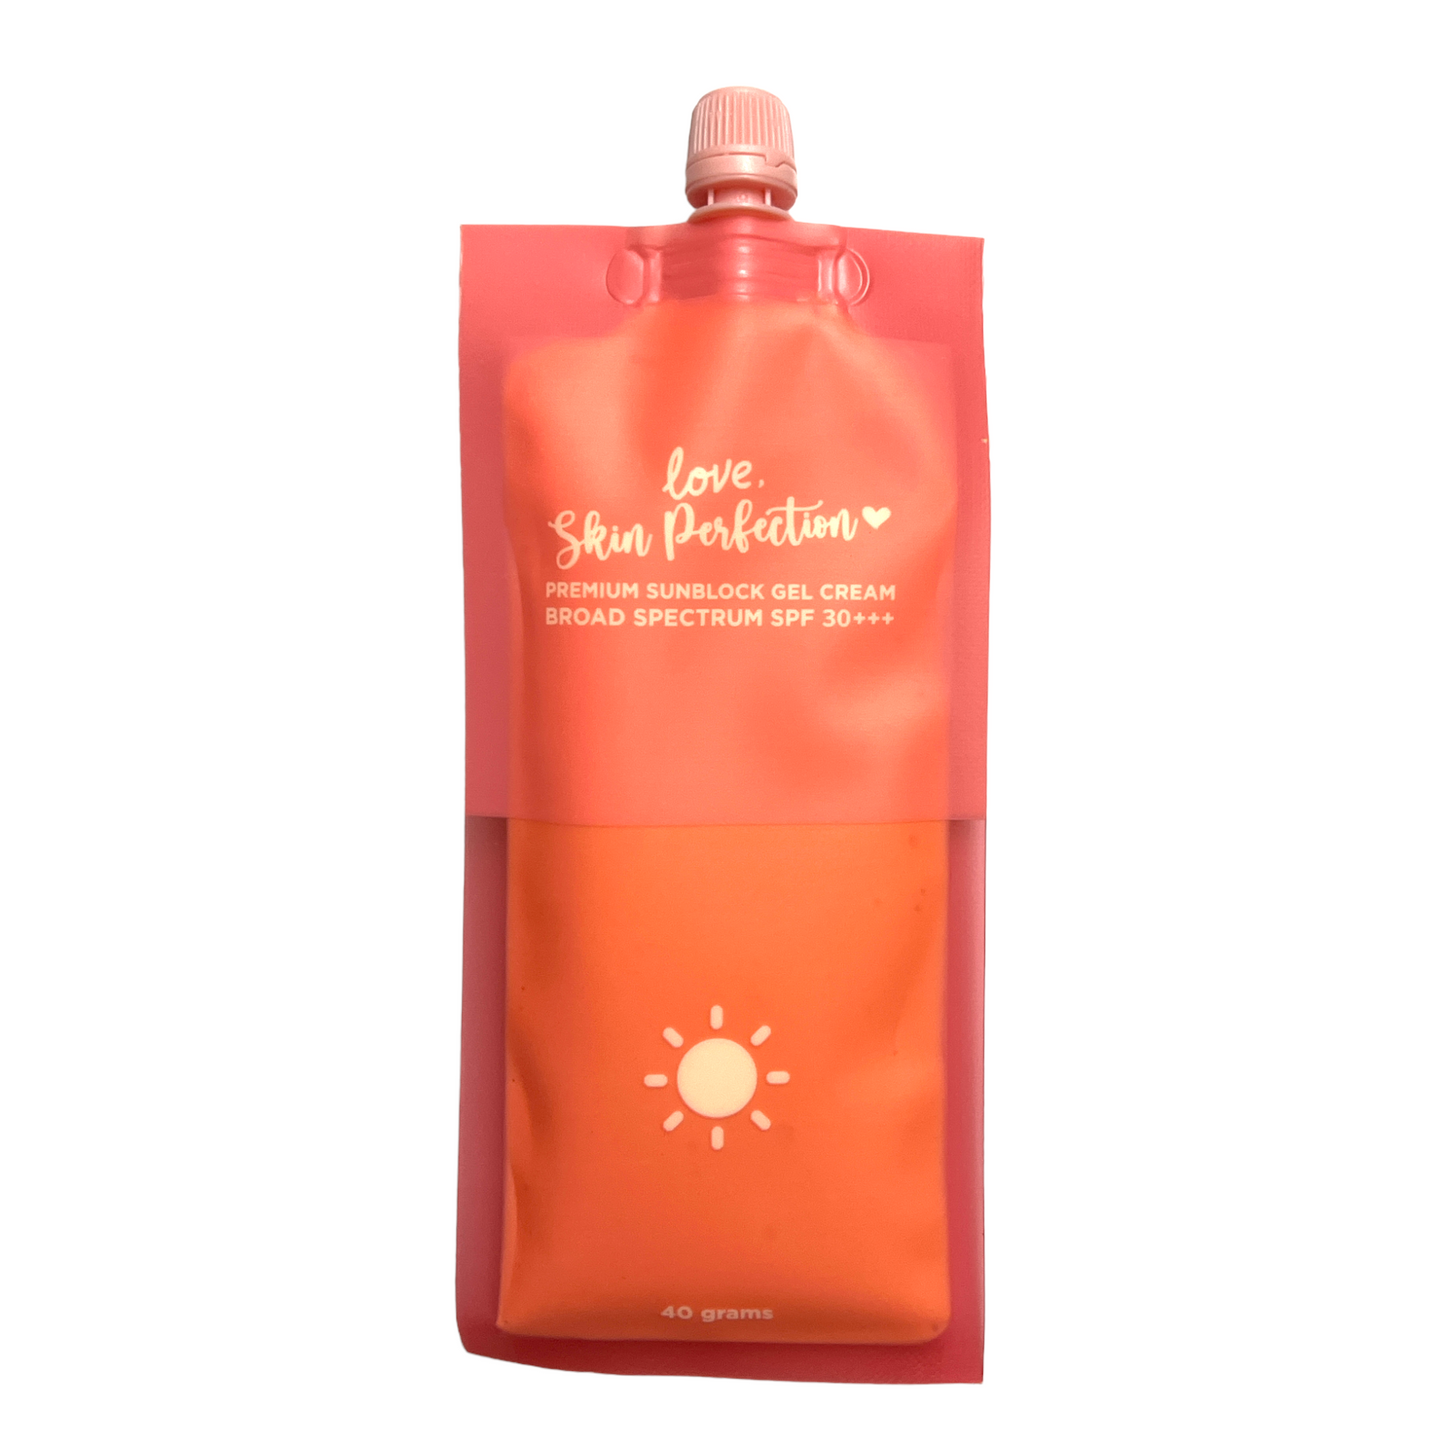 Skin Perfection Sunscreen 50g